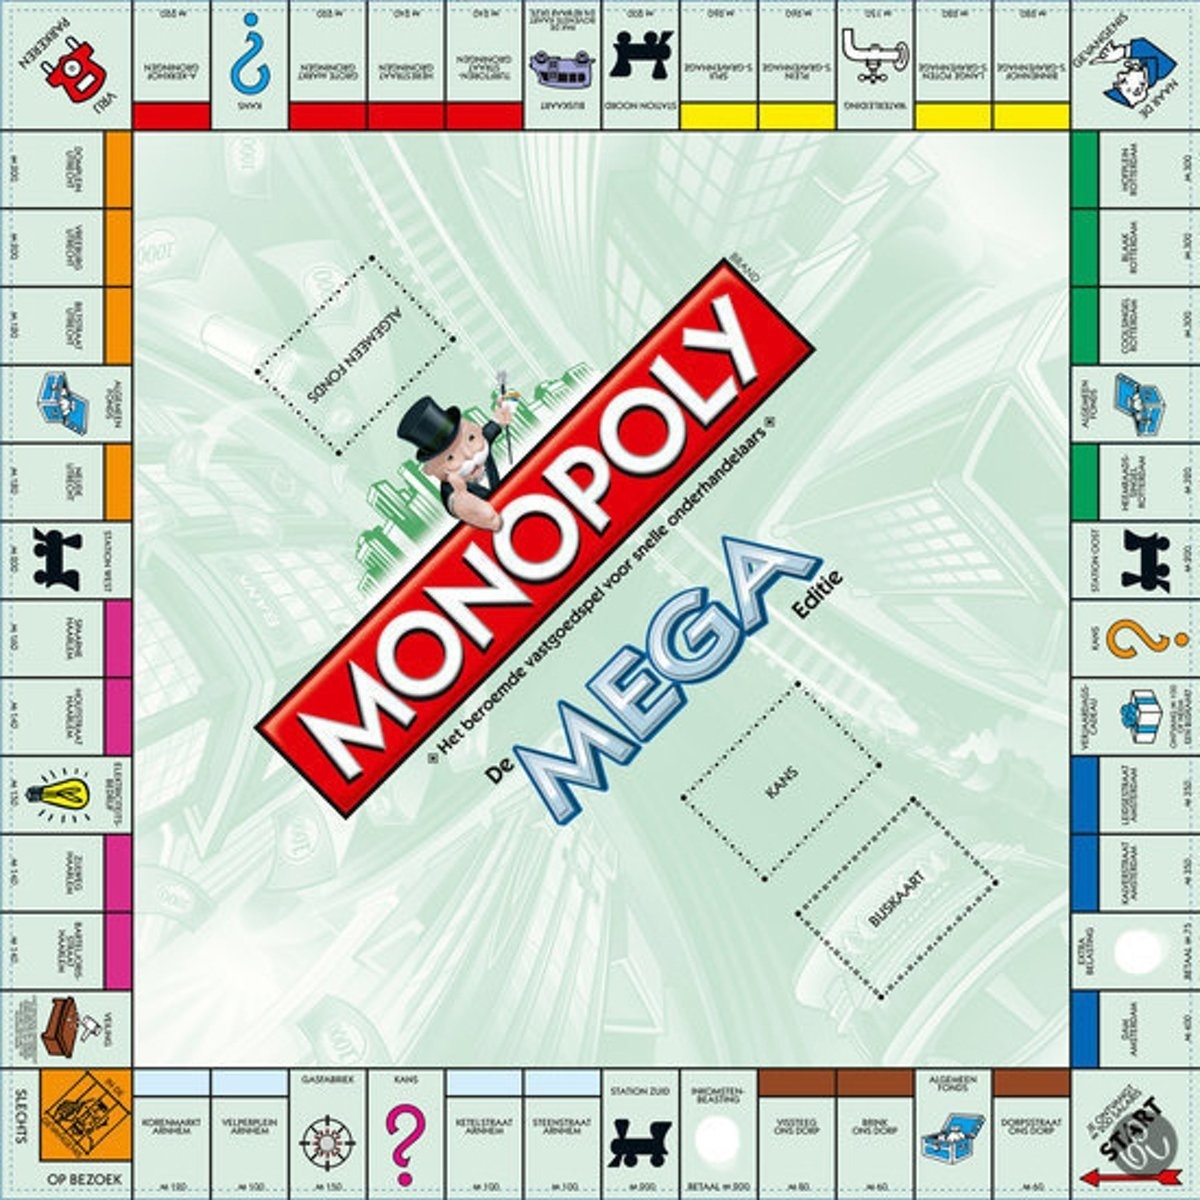 mega monopoly rules